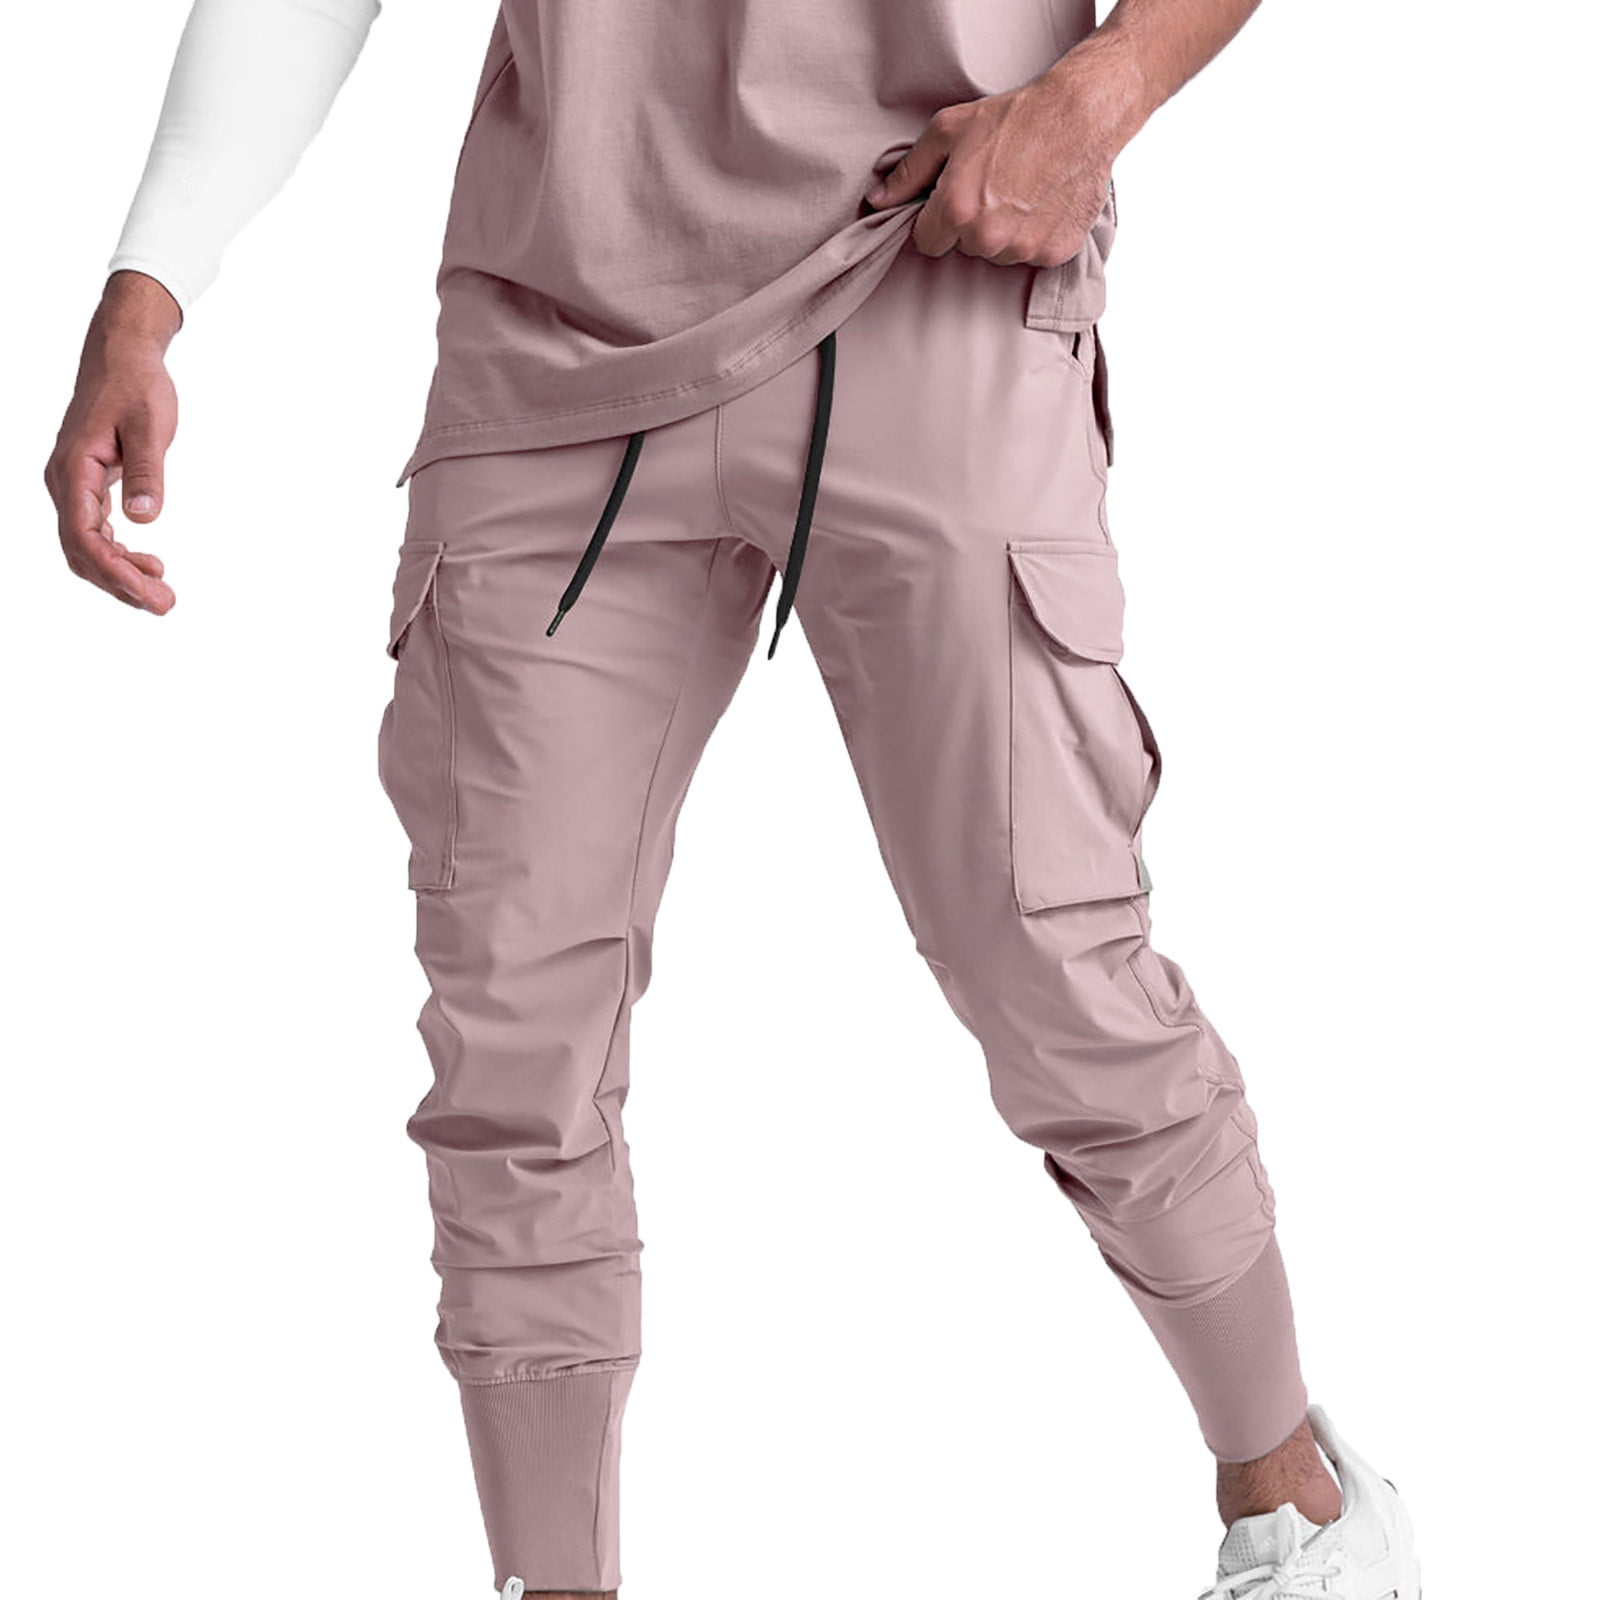 Haband Active Joe Men's Cargo Style Lounge Pajama Pants Drawstring Blue Sz  Large | eBay